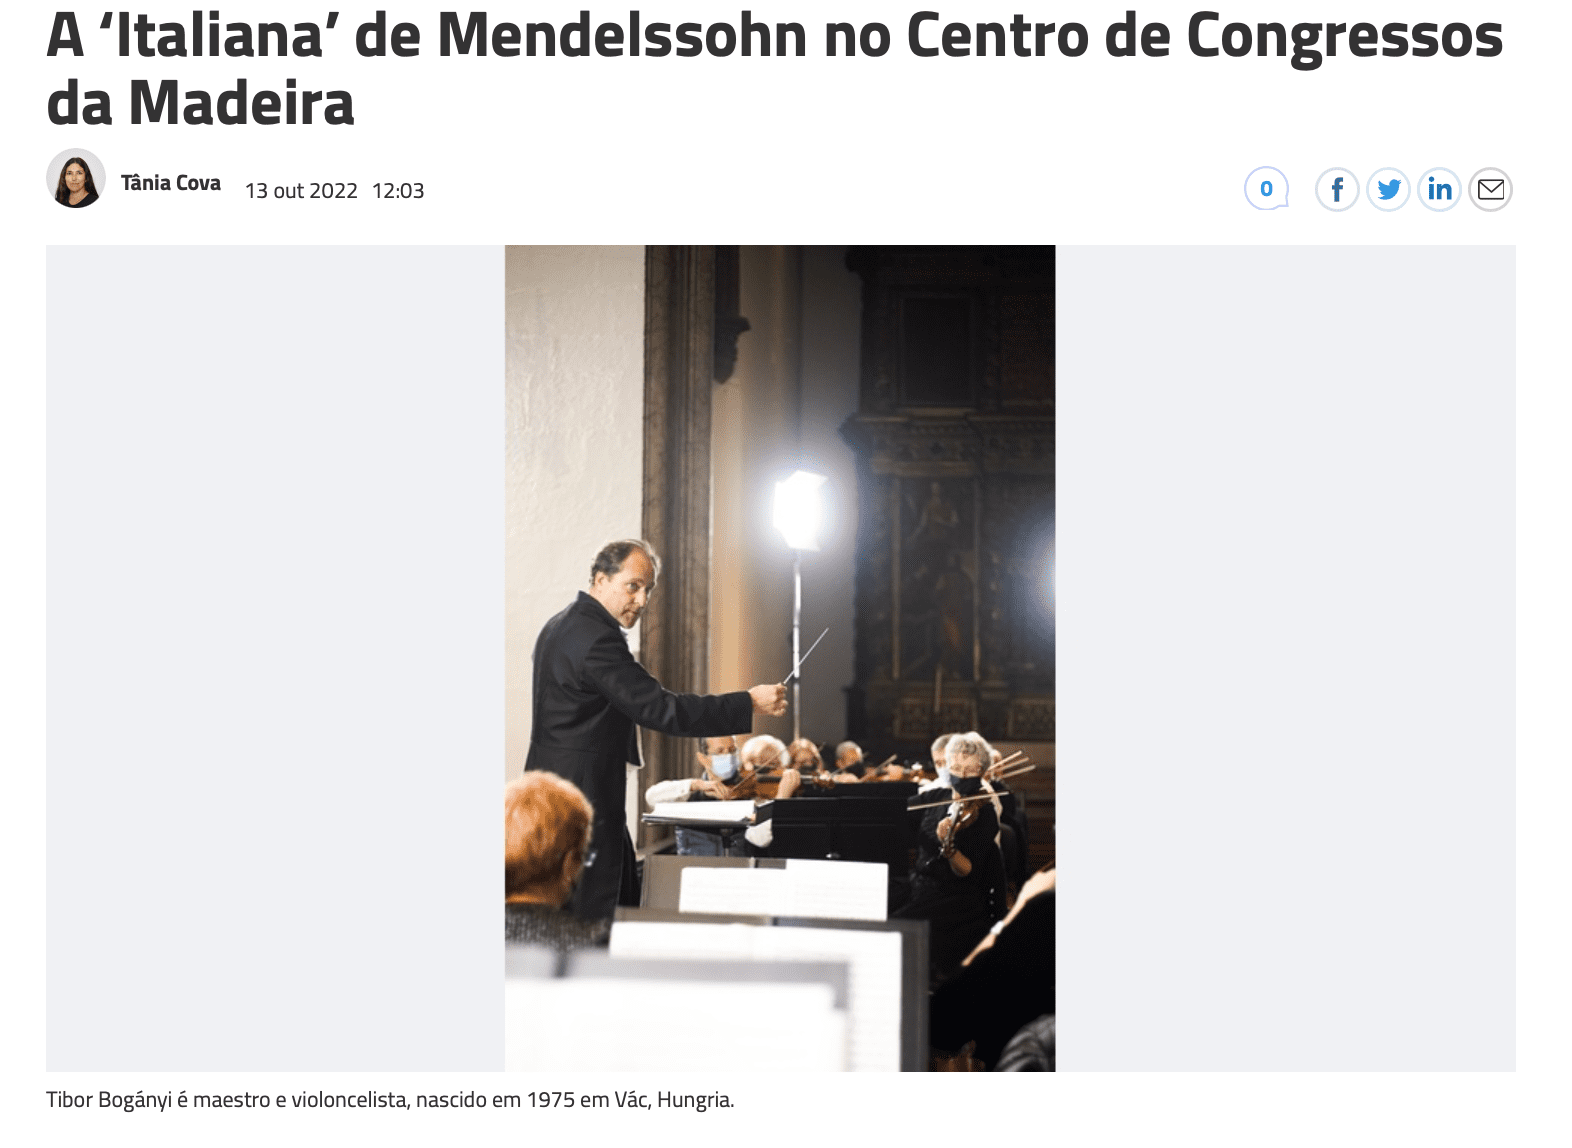 A "Italiana" de Mendelssohn no Centro de Congressos da Madeira 